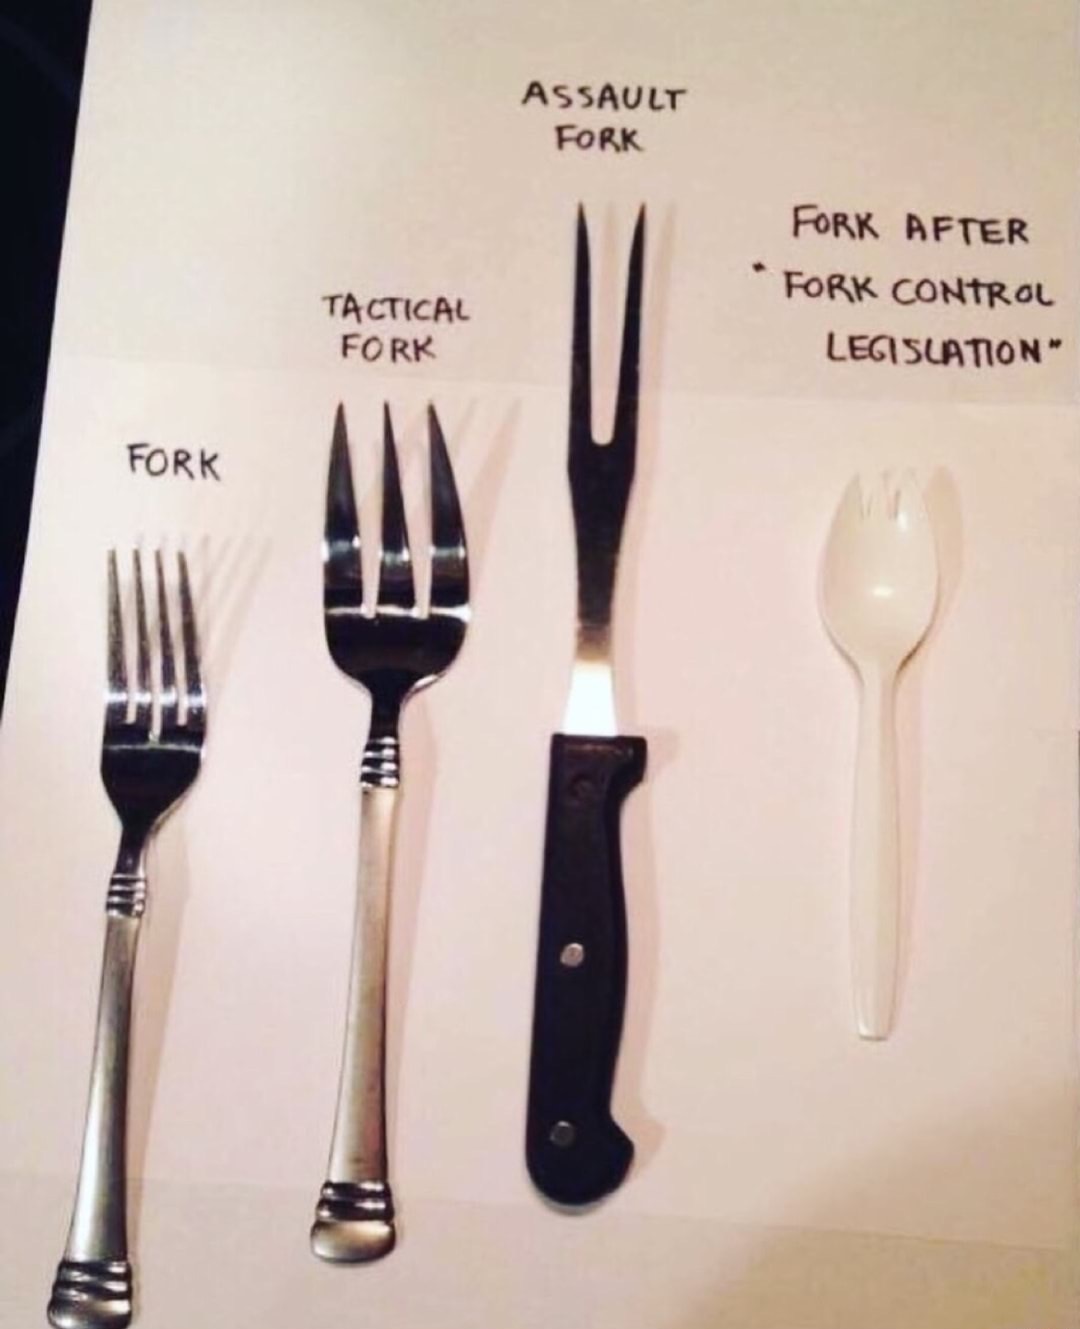 fork funny - Assault Fork Fork After Fork Control Legislation Tactical Fork Fork